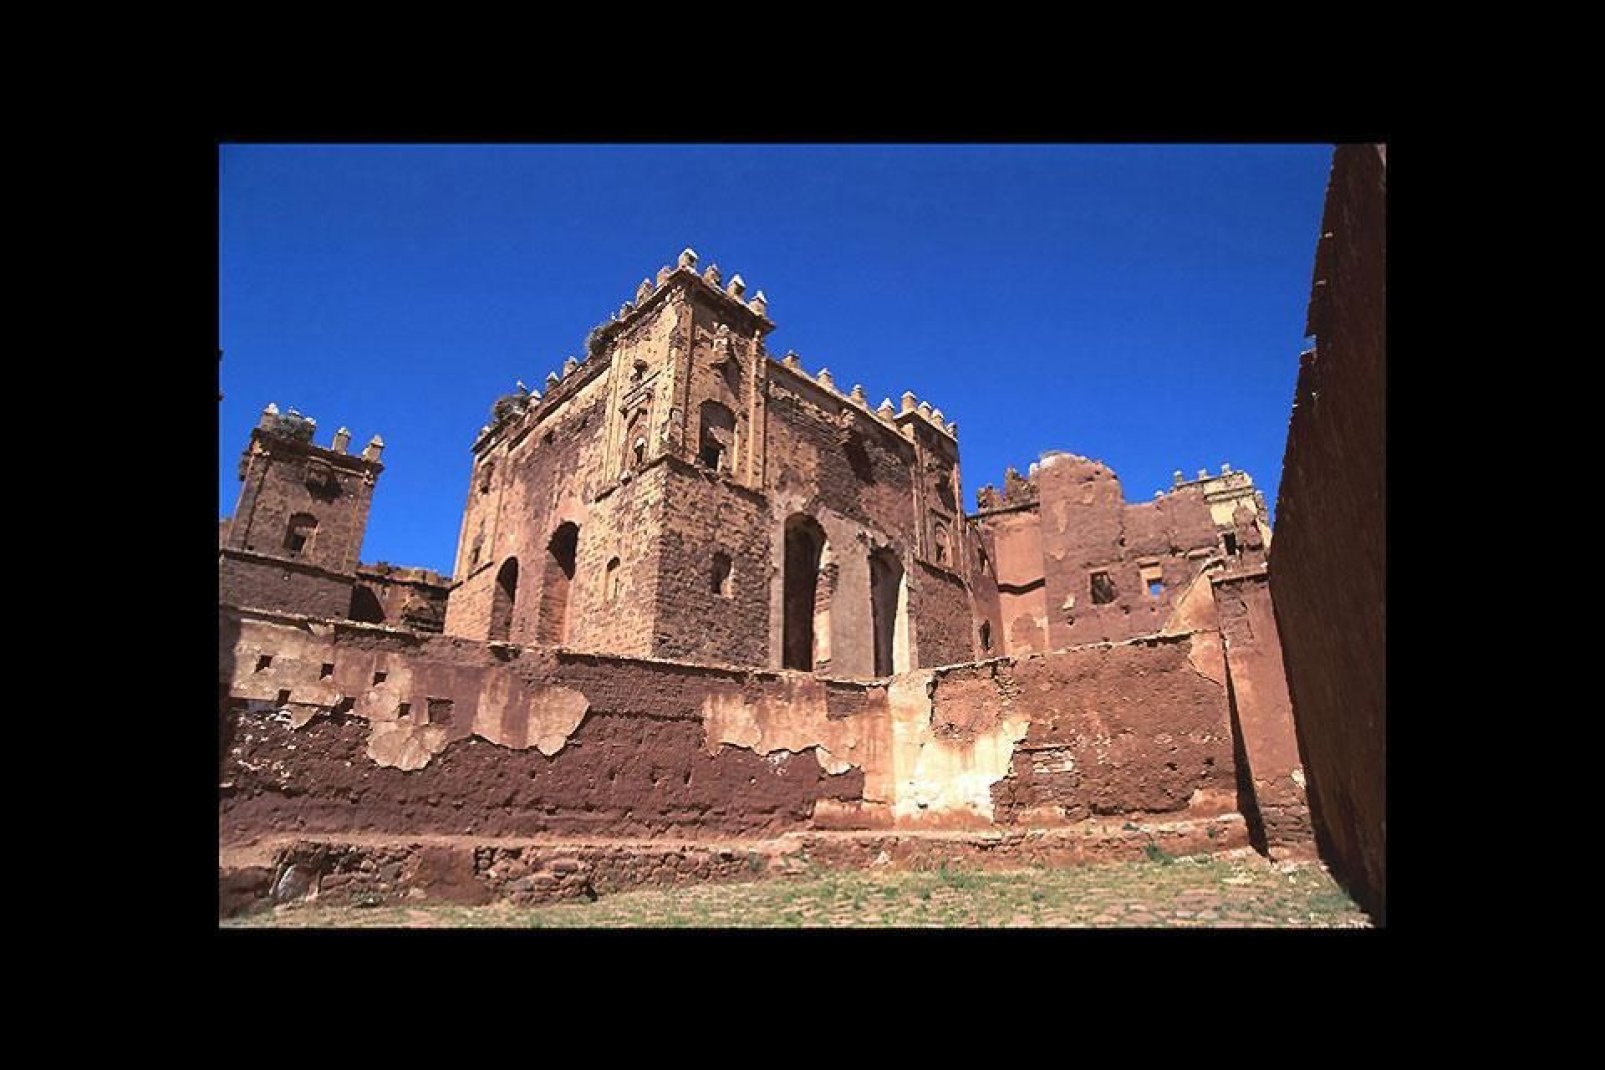 Diese Kasbah liegt in Telouet und diente einst als Residenz des Paschas von Marrakesch. Ein absolut sehenswertes Monument.